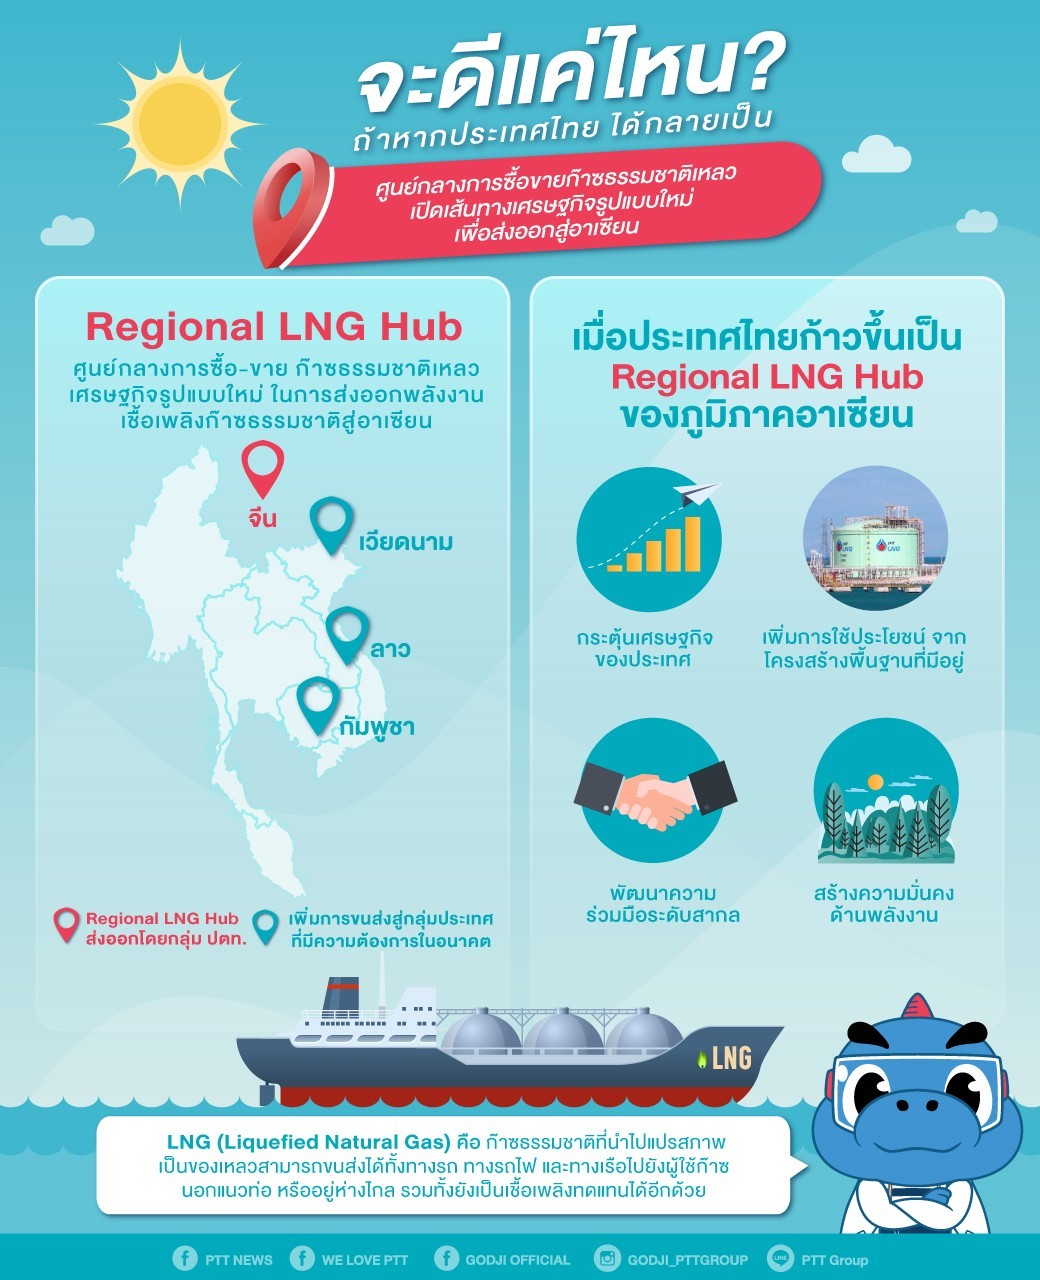 ถ้าอนาคตไทยกลายเป็น ศูนย์กลางการซื้อ-ขาย ก๊าซธรรมชาติเหลว จะเกิดอะไรขึ้น?